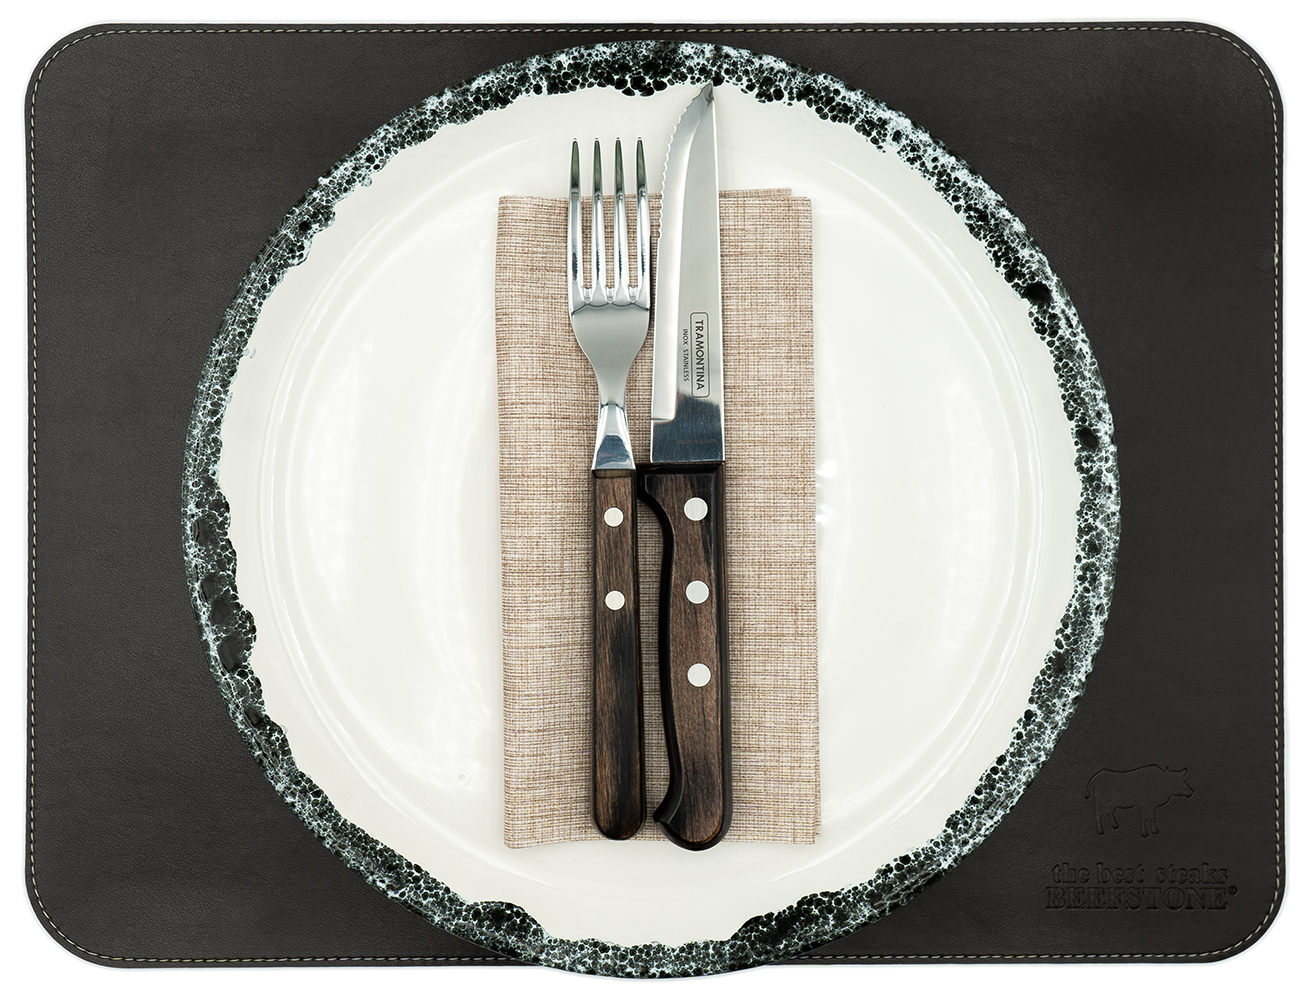 Original Beefstone® Tischset aus veganem PU Kunstleder - doppelseitig - 40 x 30 cm - Schwarzbraun / Ecru 